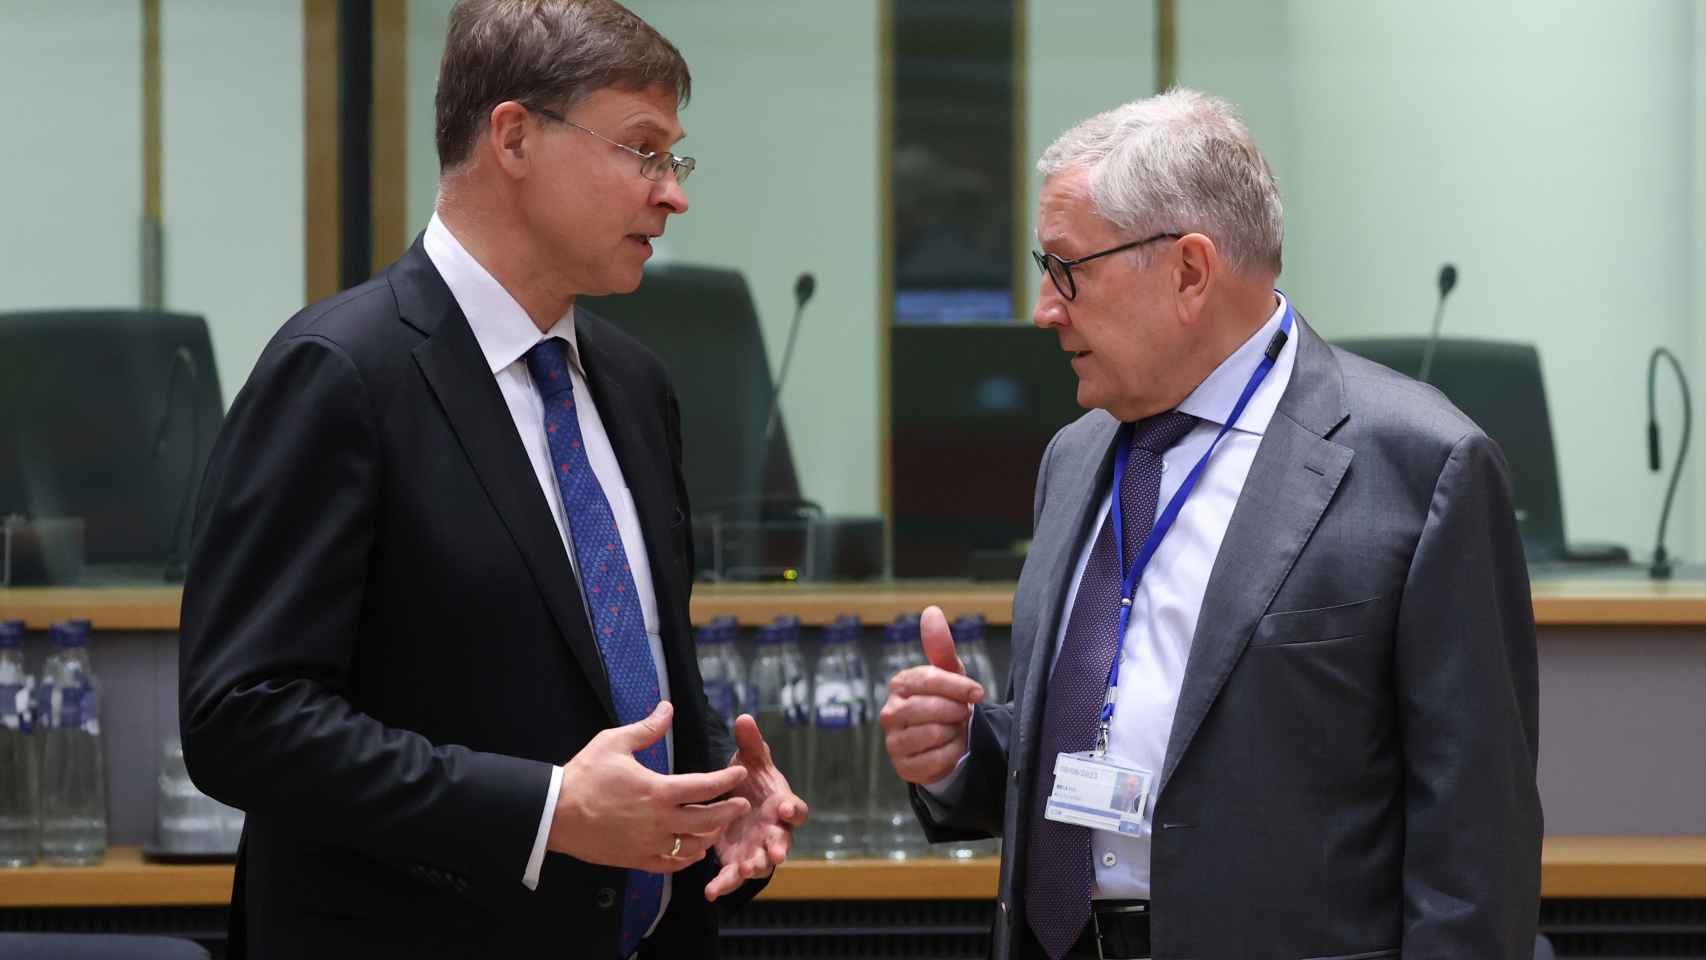 El vicepresidente de la Comisión, Valdis Dombrovskis, conversa con el jefe del fondo de rescate de la UE, Klaus Regling